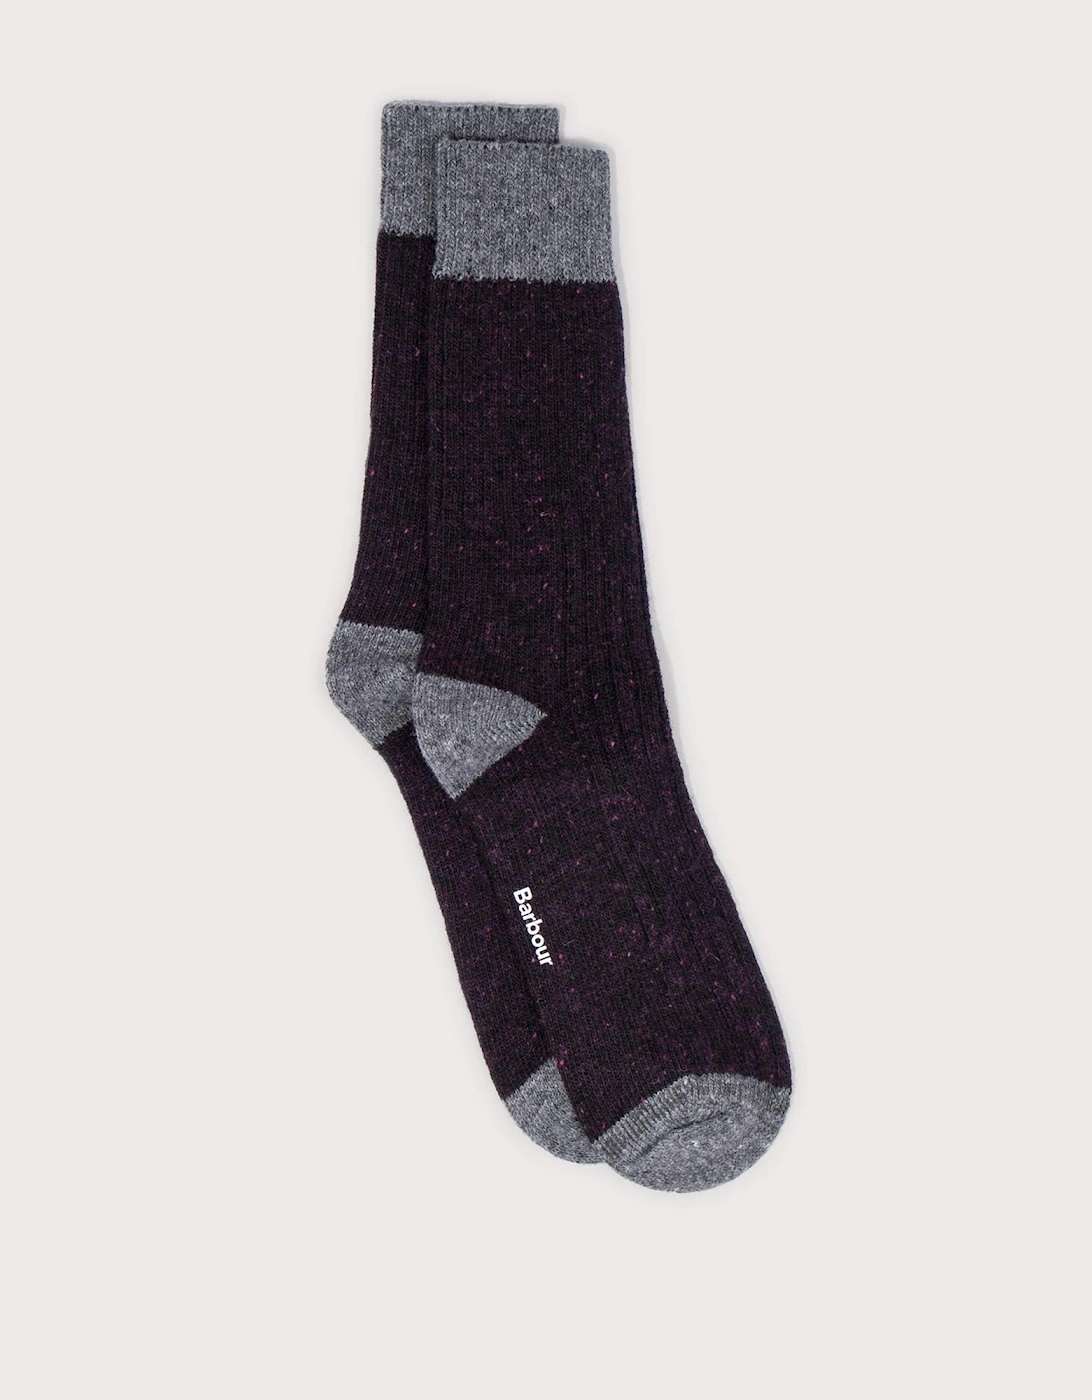 Houghton Socks, 3 of 2